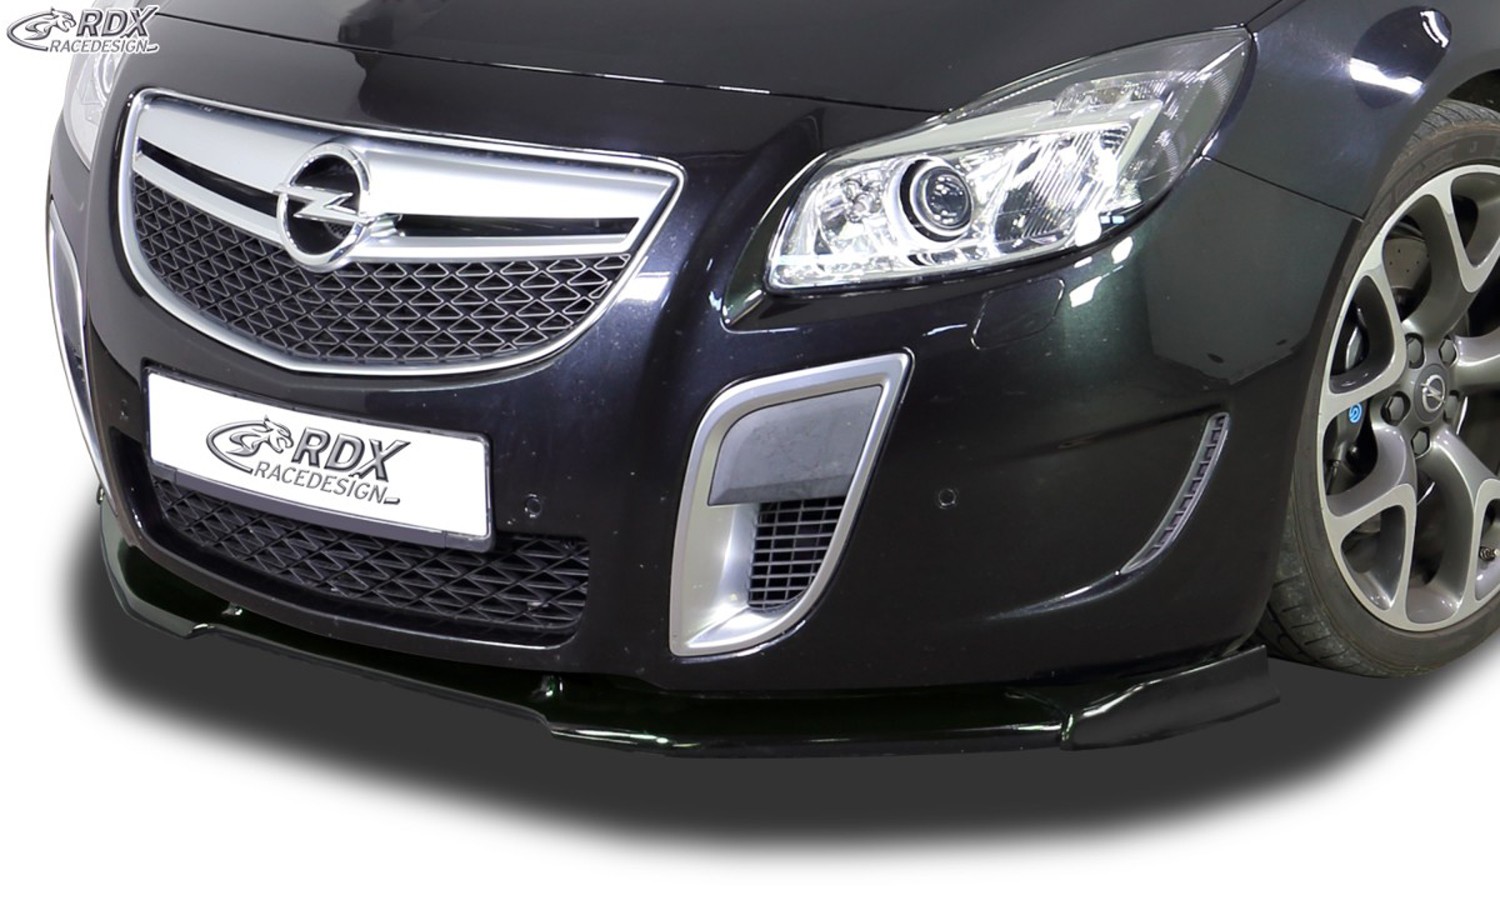 VARIO-X Frontspoiler Opel Insignia OPC (bis 2013) (OPC bzw. Fahrzeuge mit OPC Frontstosstange) Frontansatz